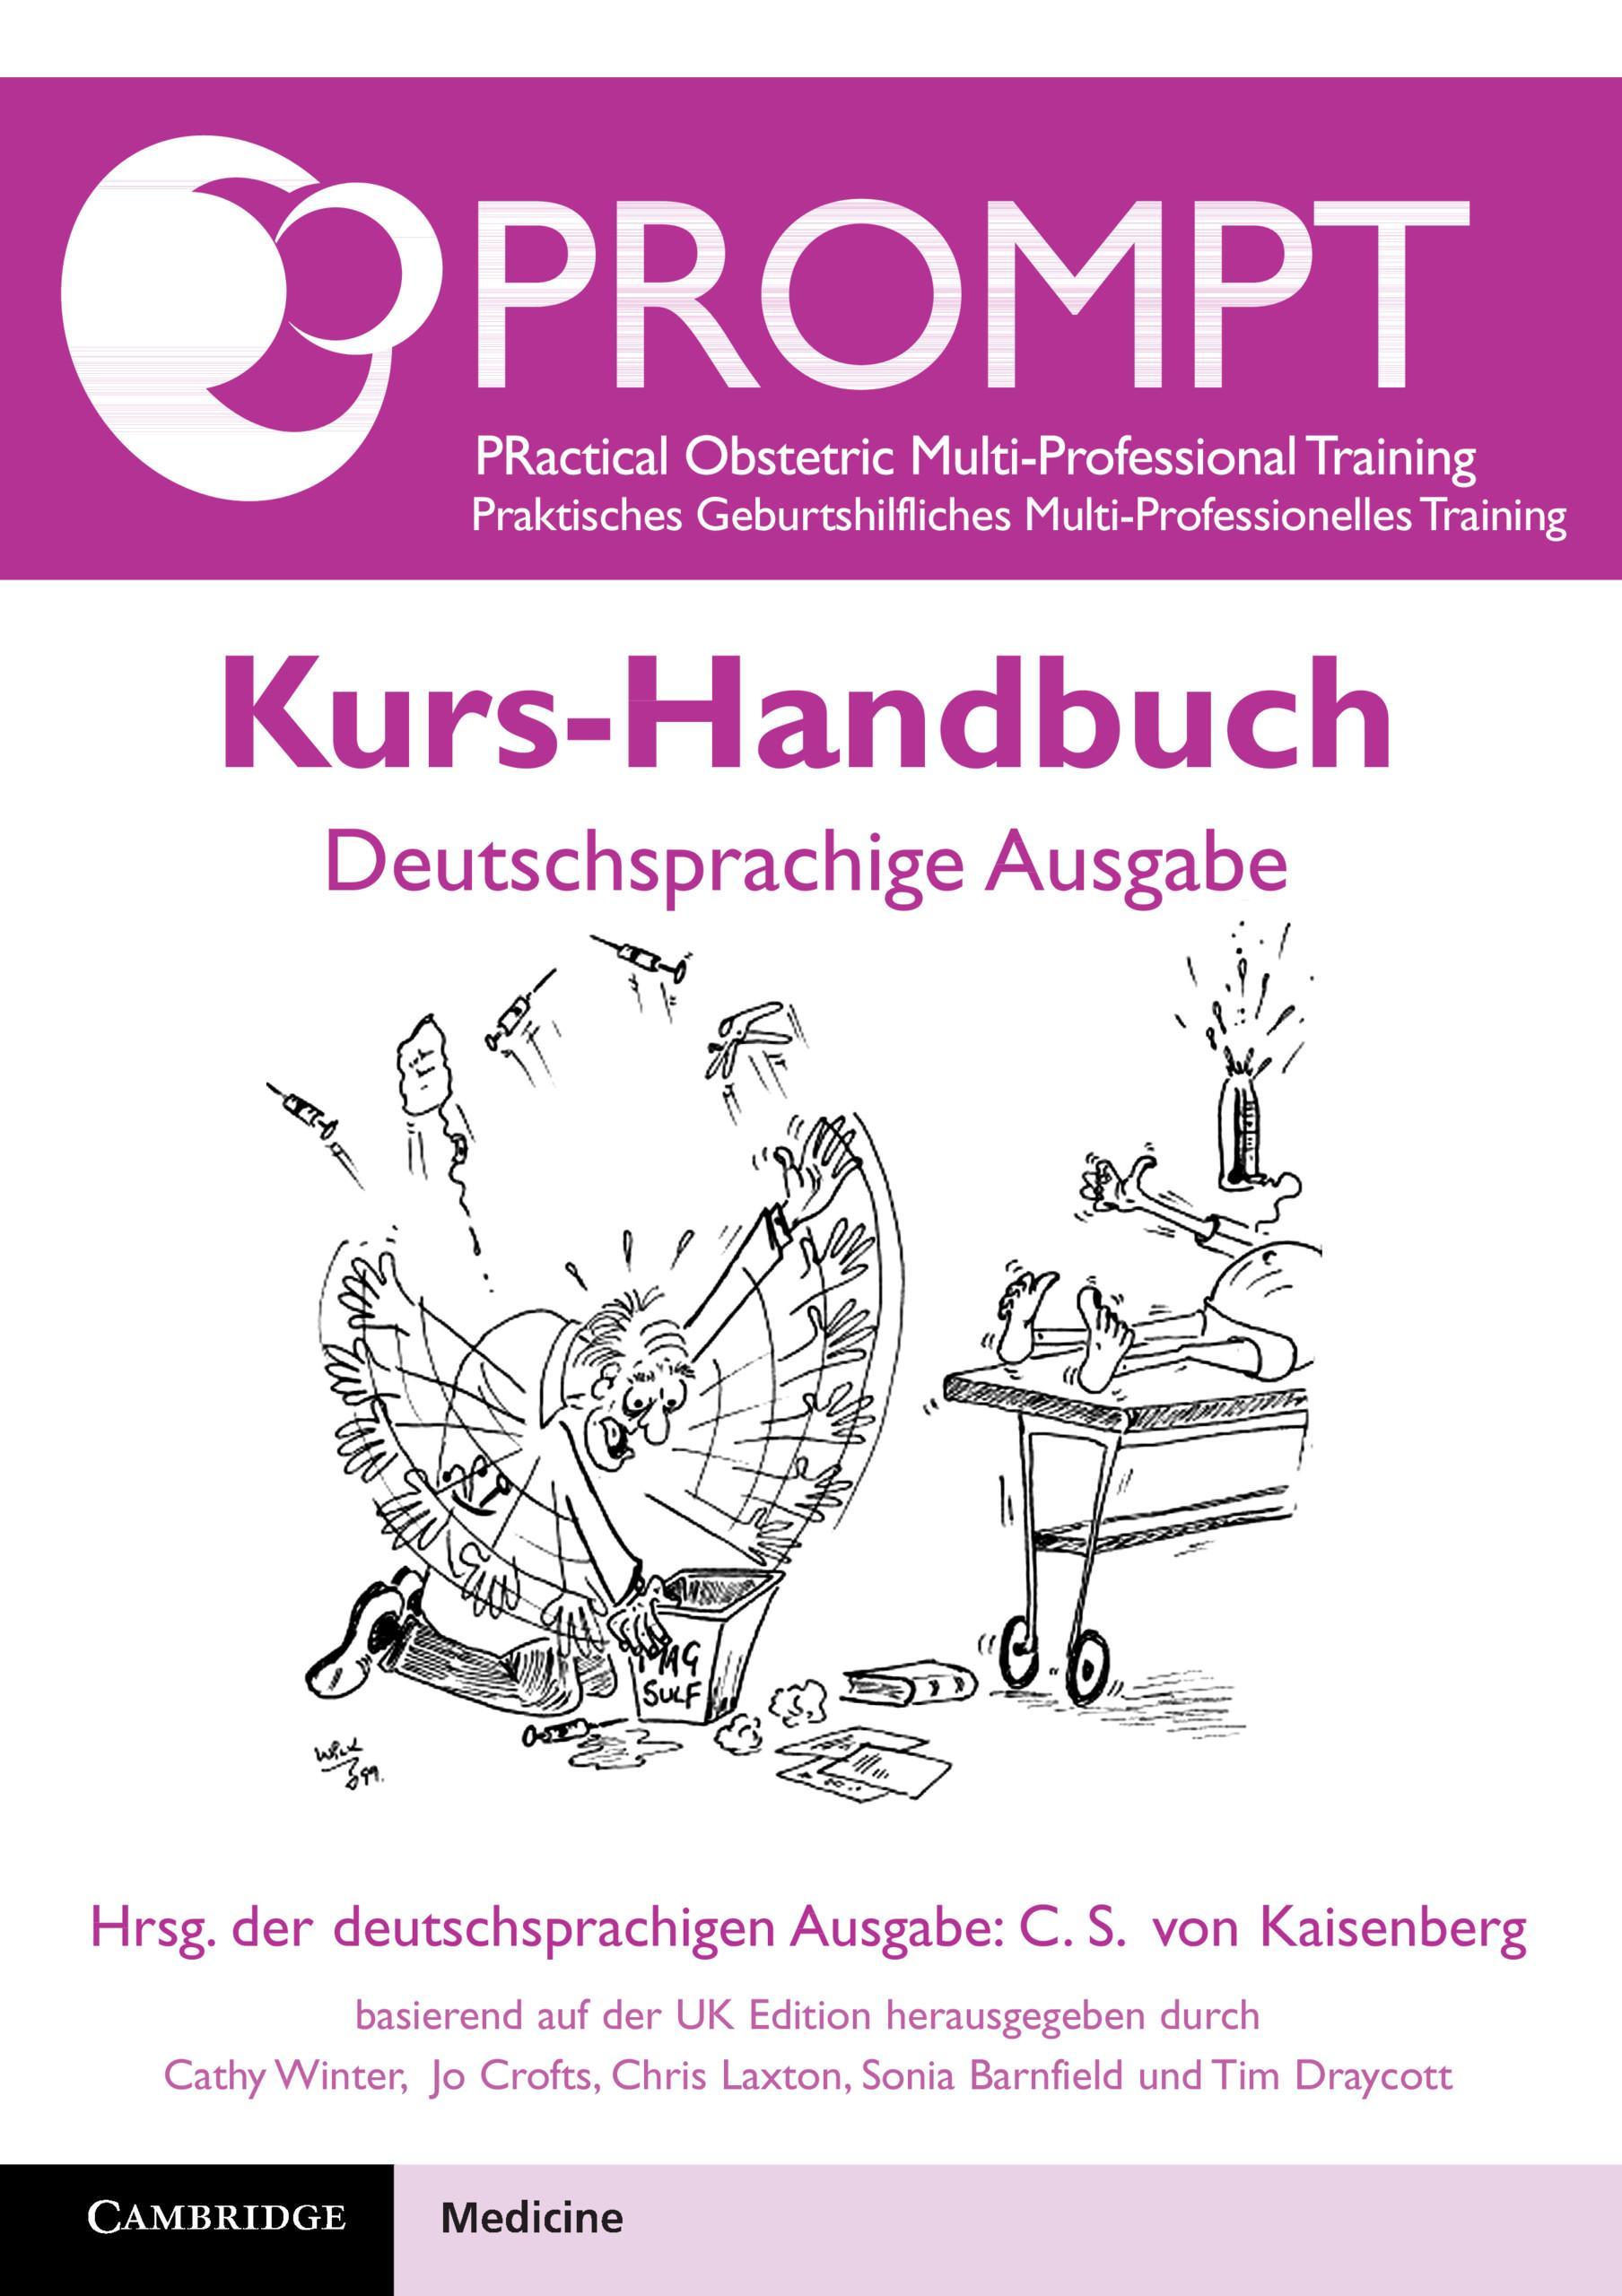 PROMPT Kurs-Handbuch